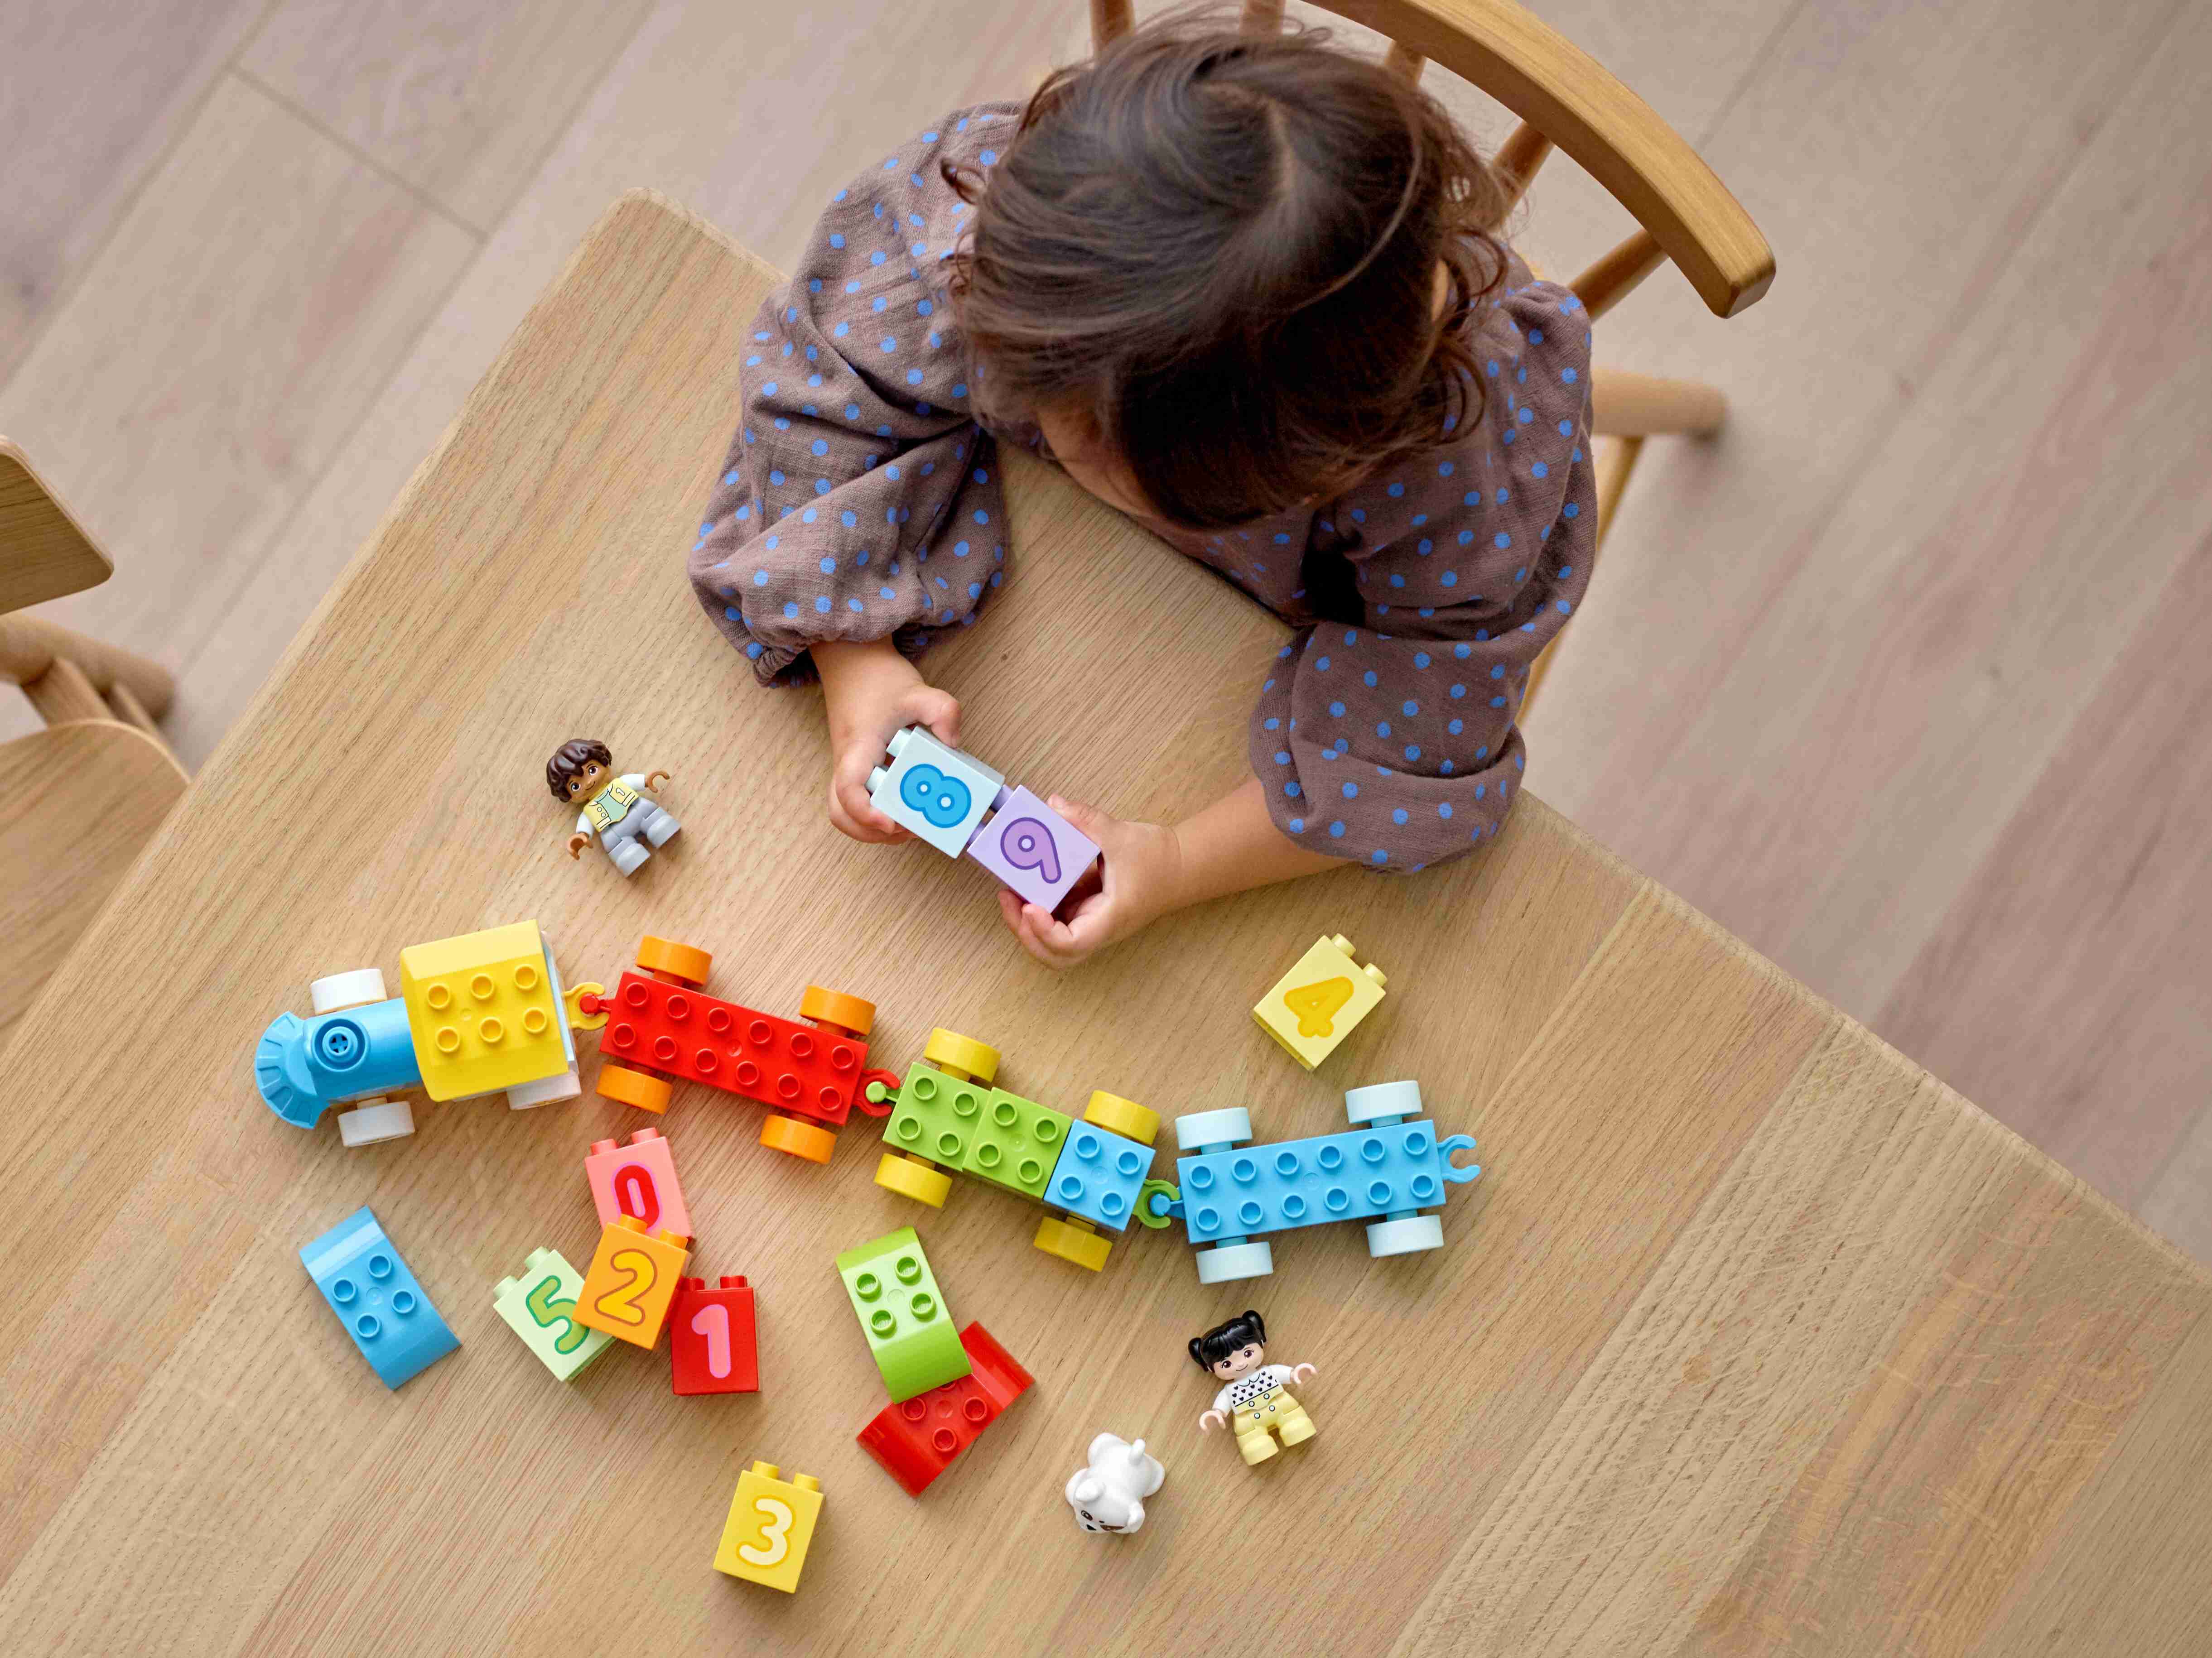 LEGO 10954 DUPLO Zahlenzug - Zählen Lernen, Zug Spielzeug, Lernspielzeug